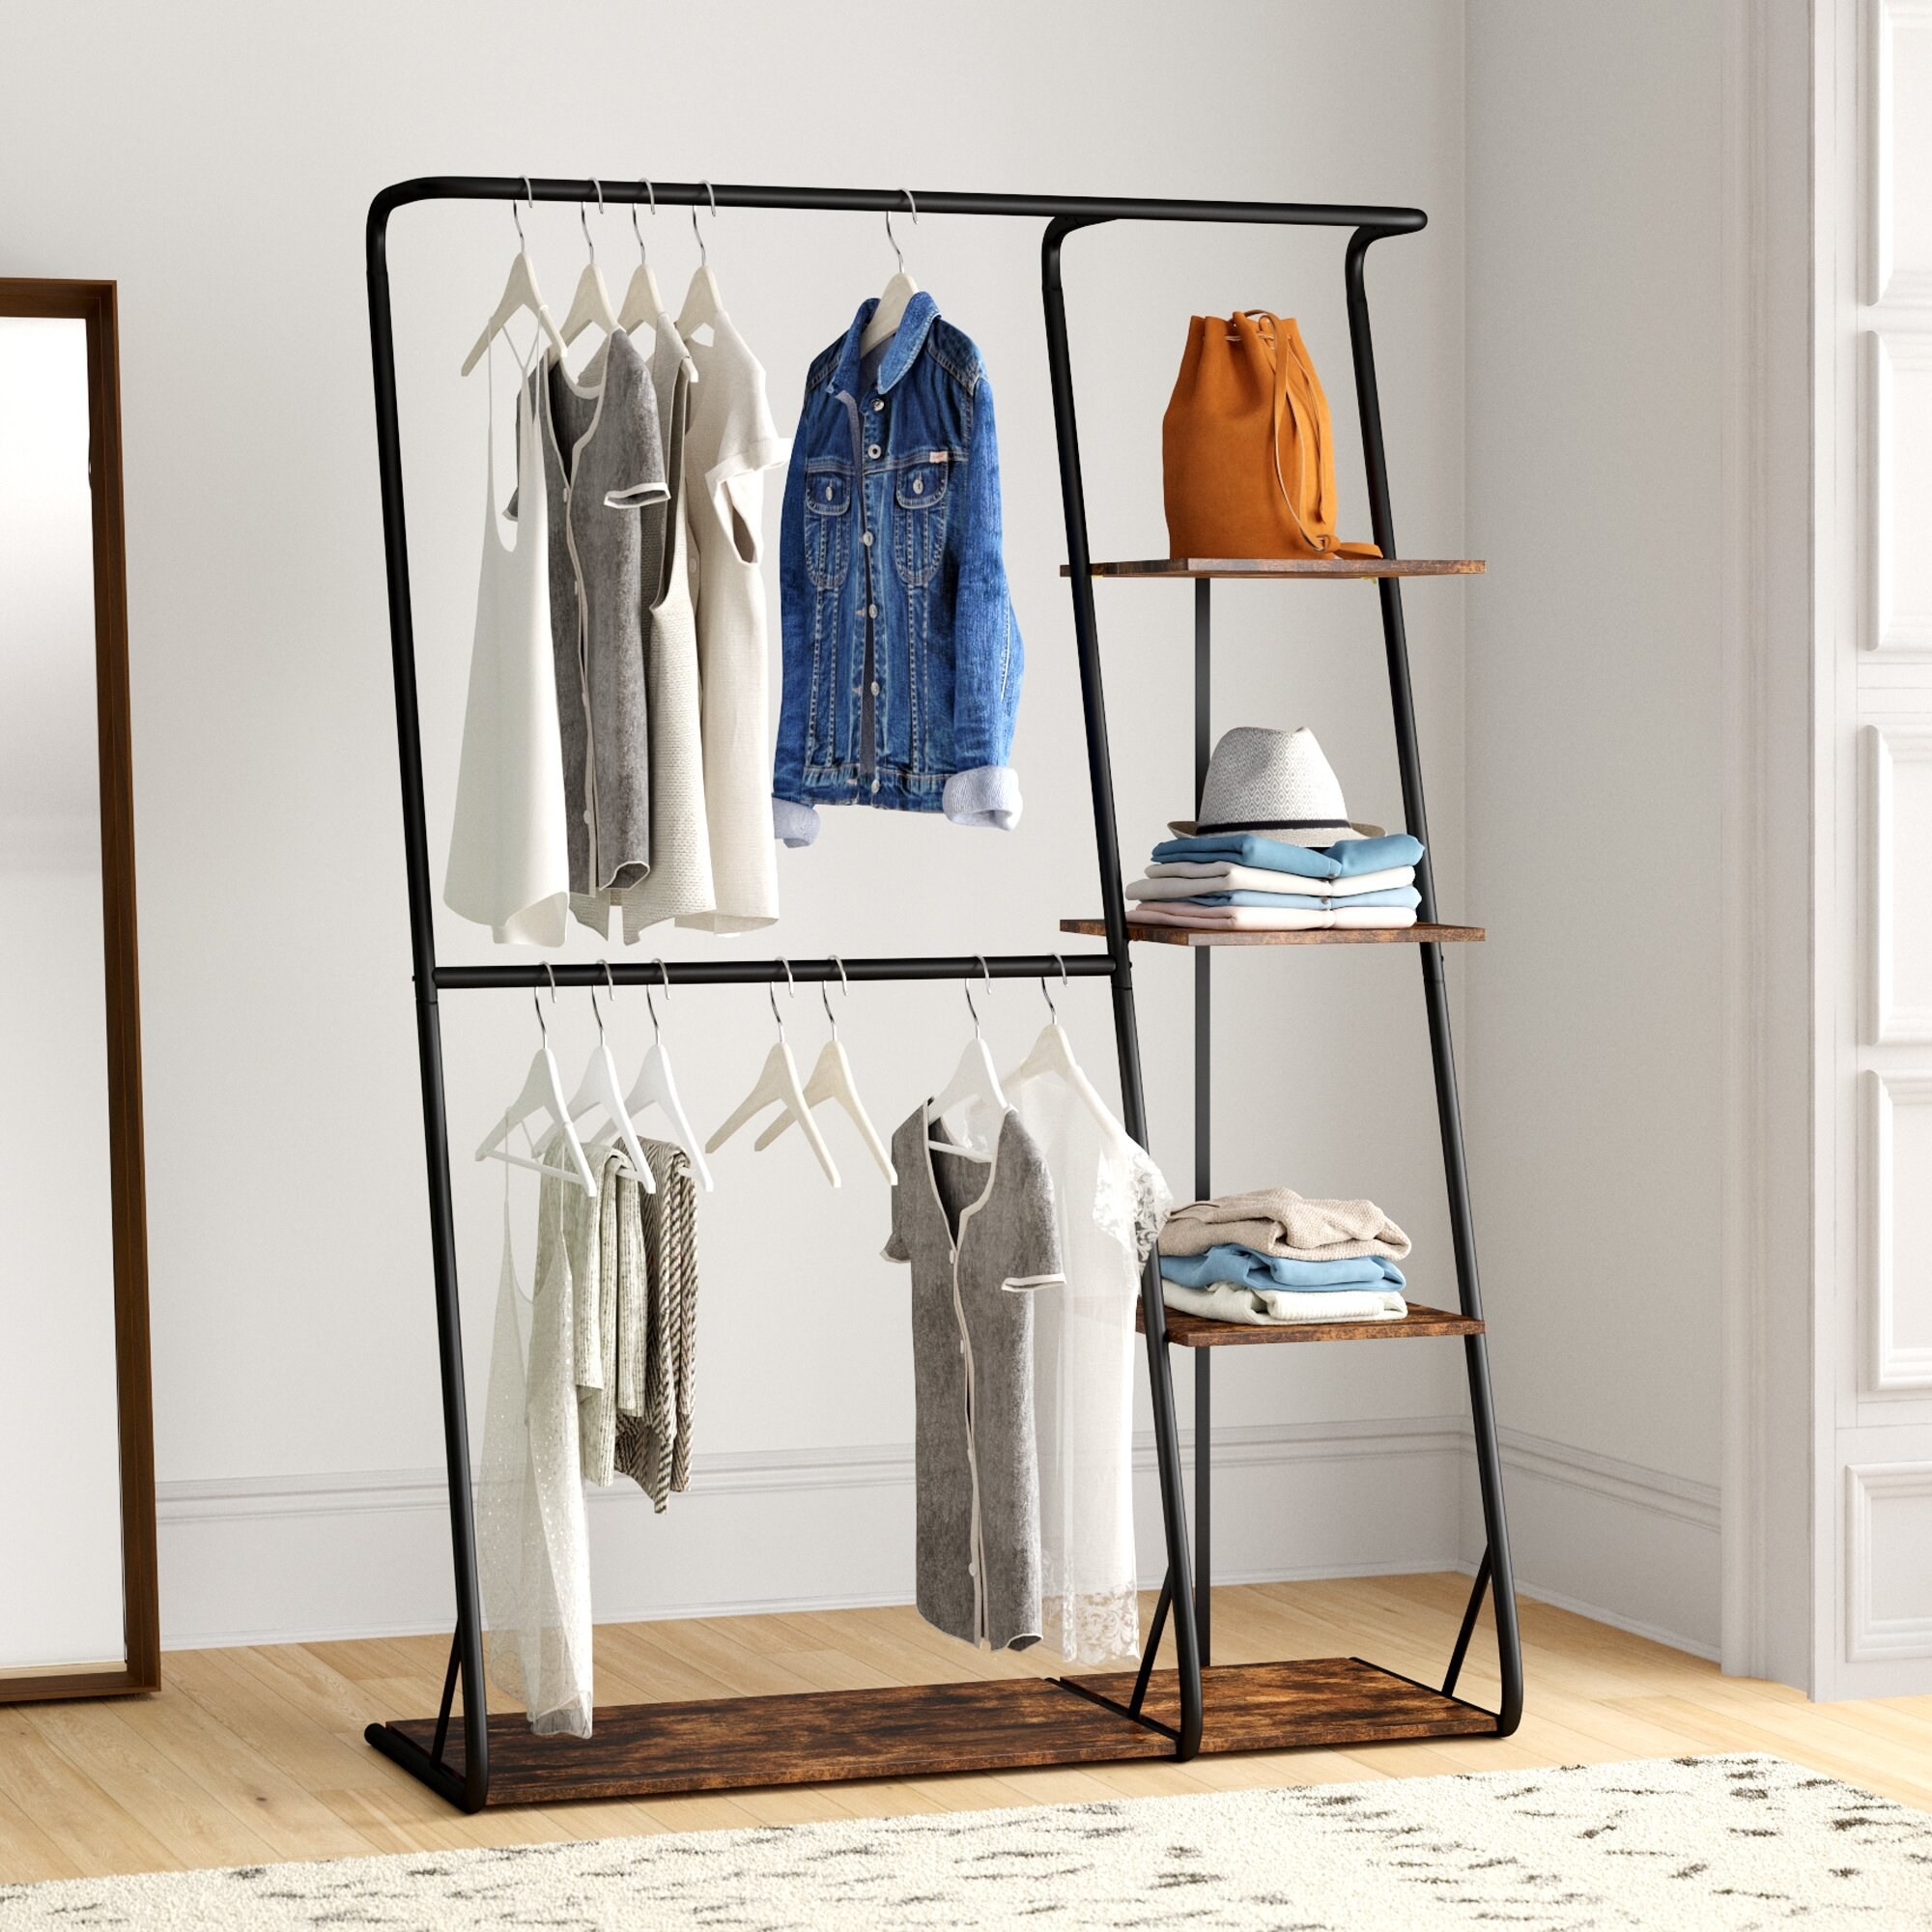 Industrial clothing rack in bedroom